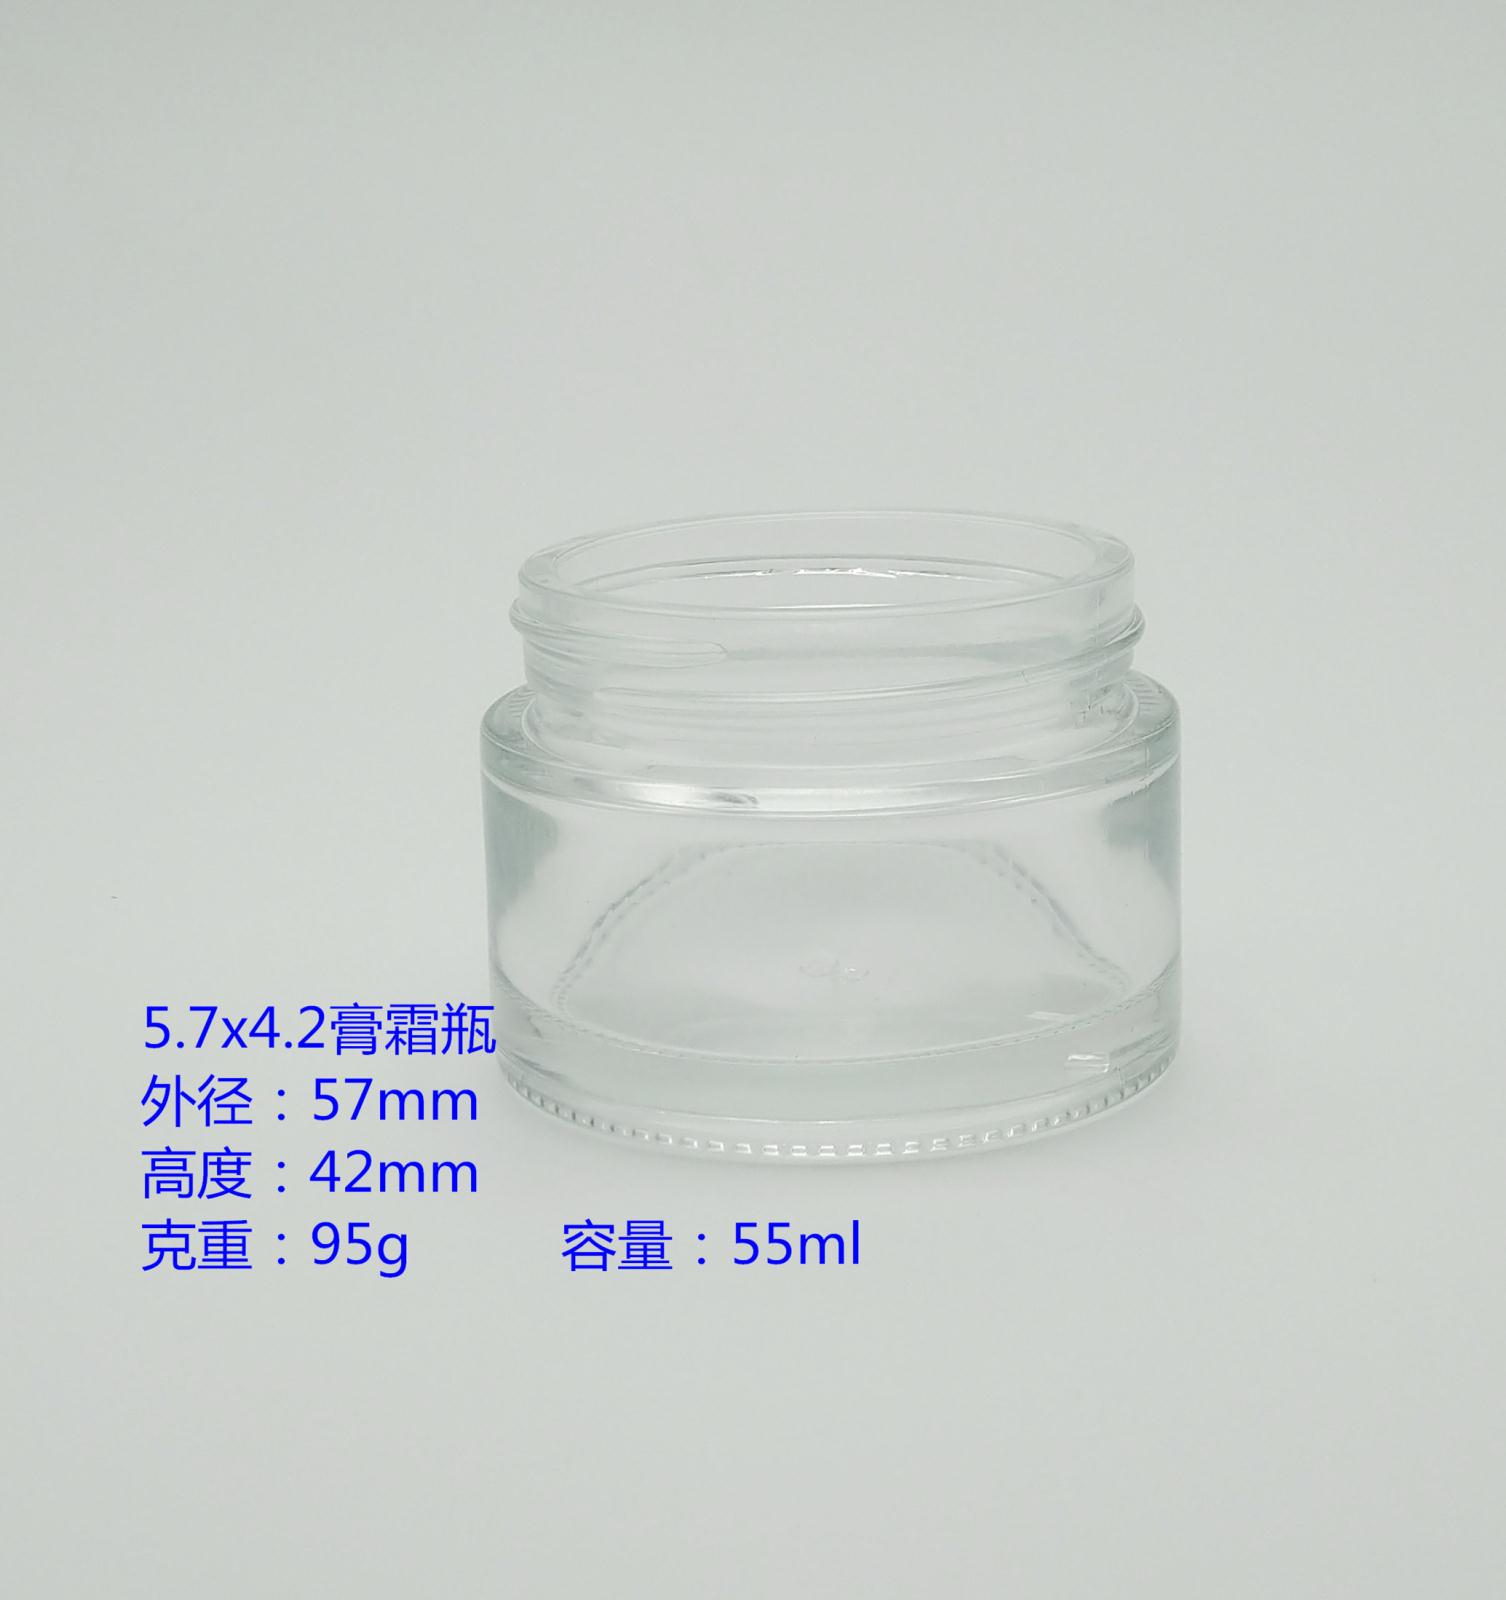 5.7x4.2膏霜瓶